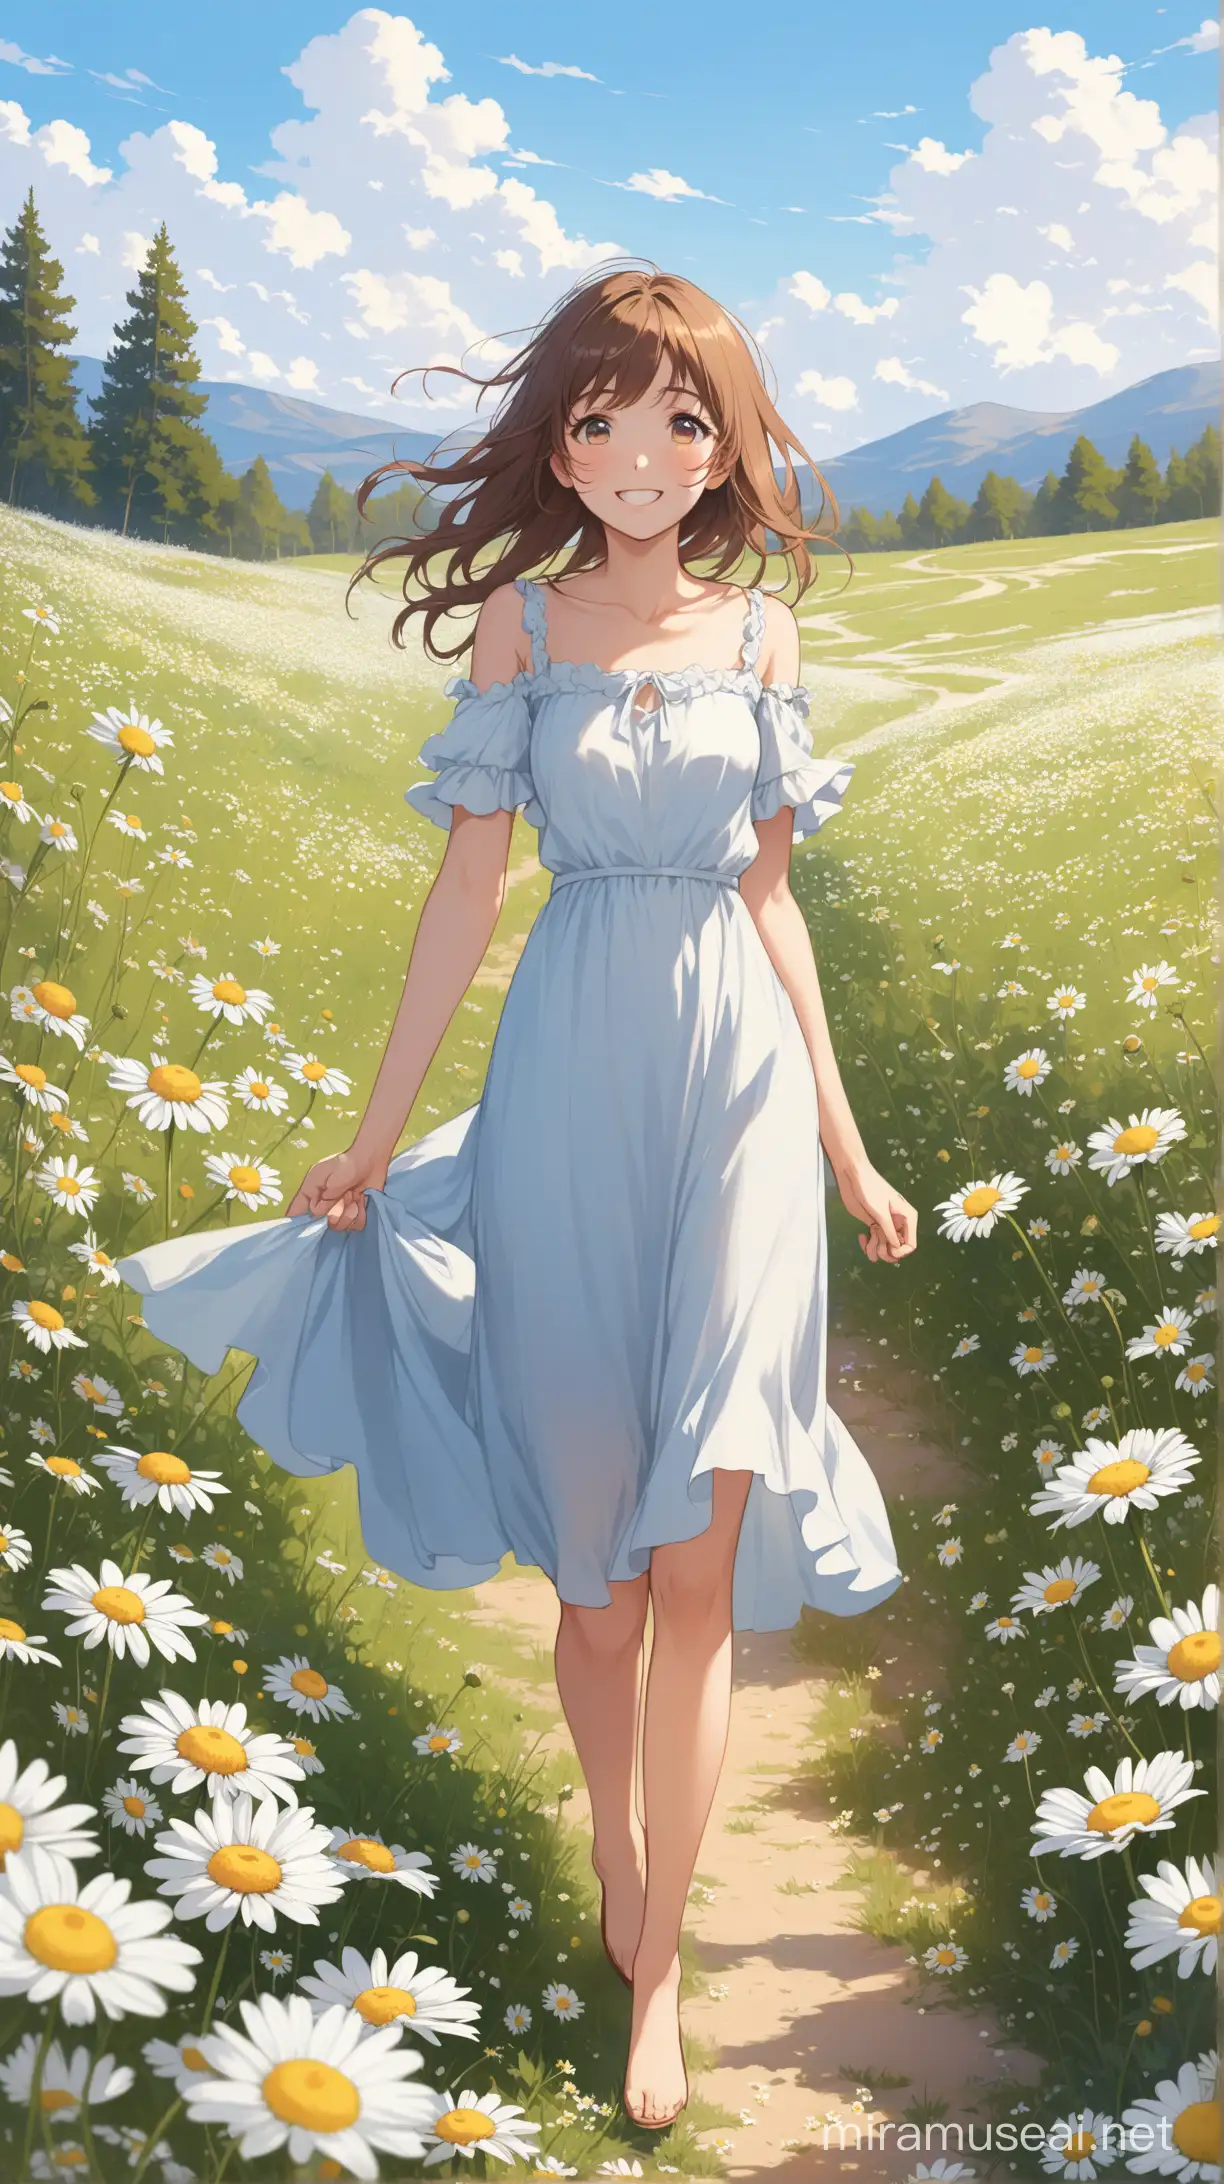 Joyful Girl Strolling in a Lavender Chamomile Meadow